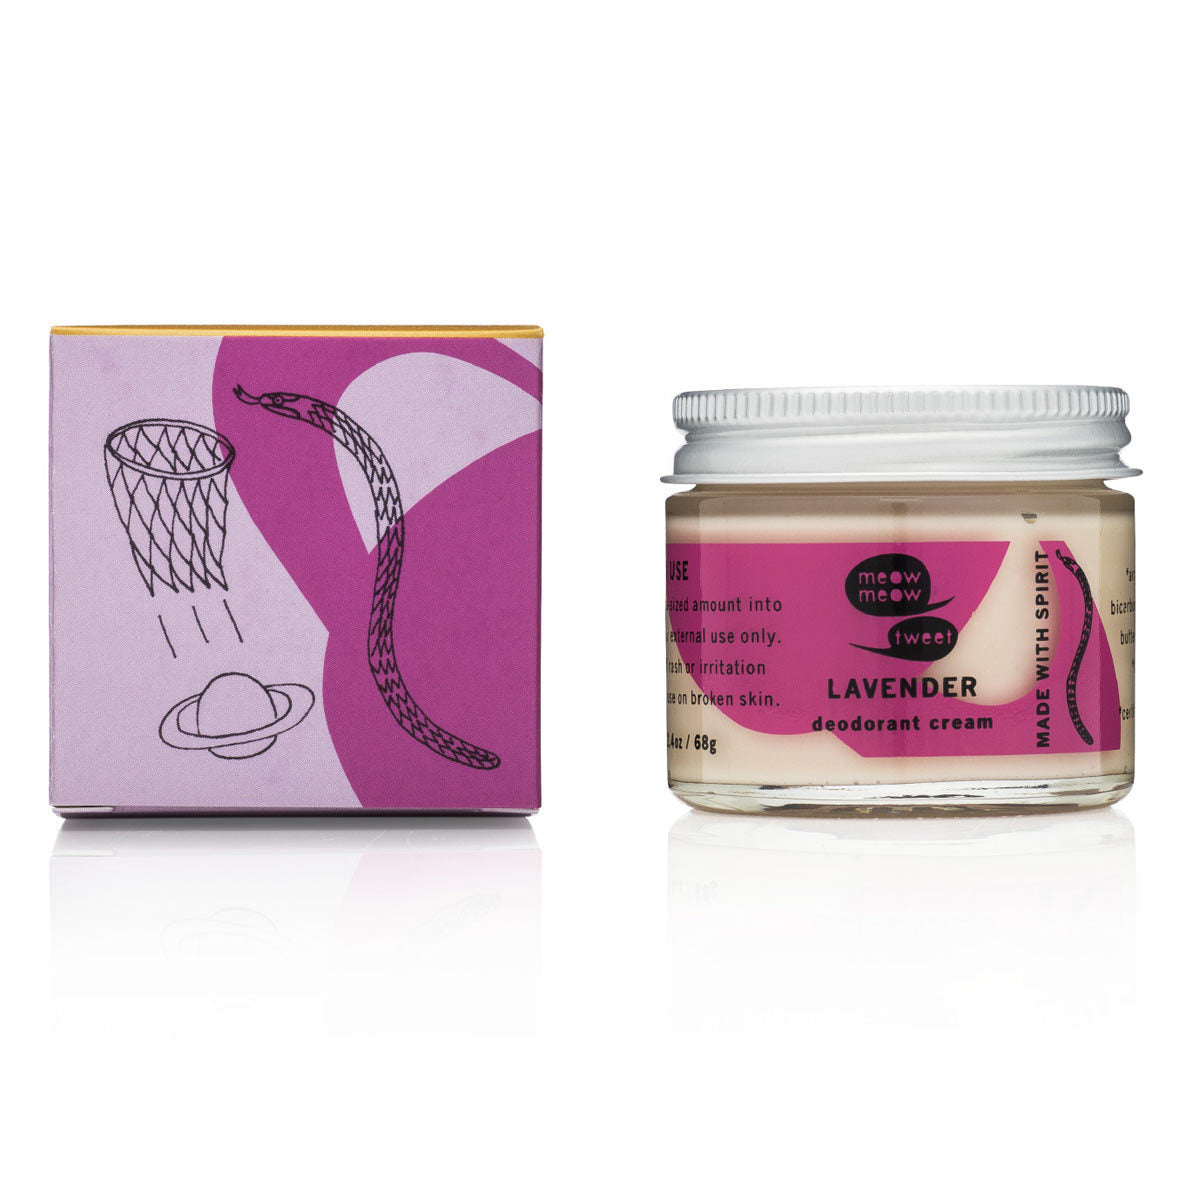 Primary image of Lavender Deodorant Cream